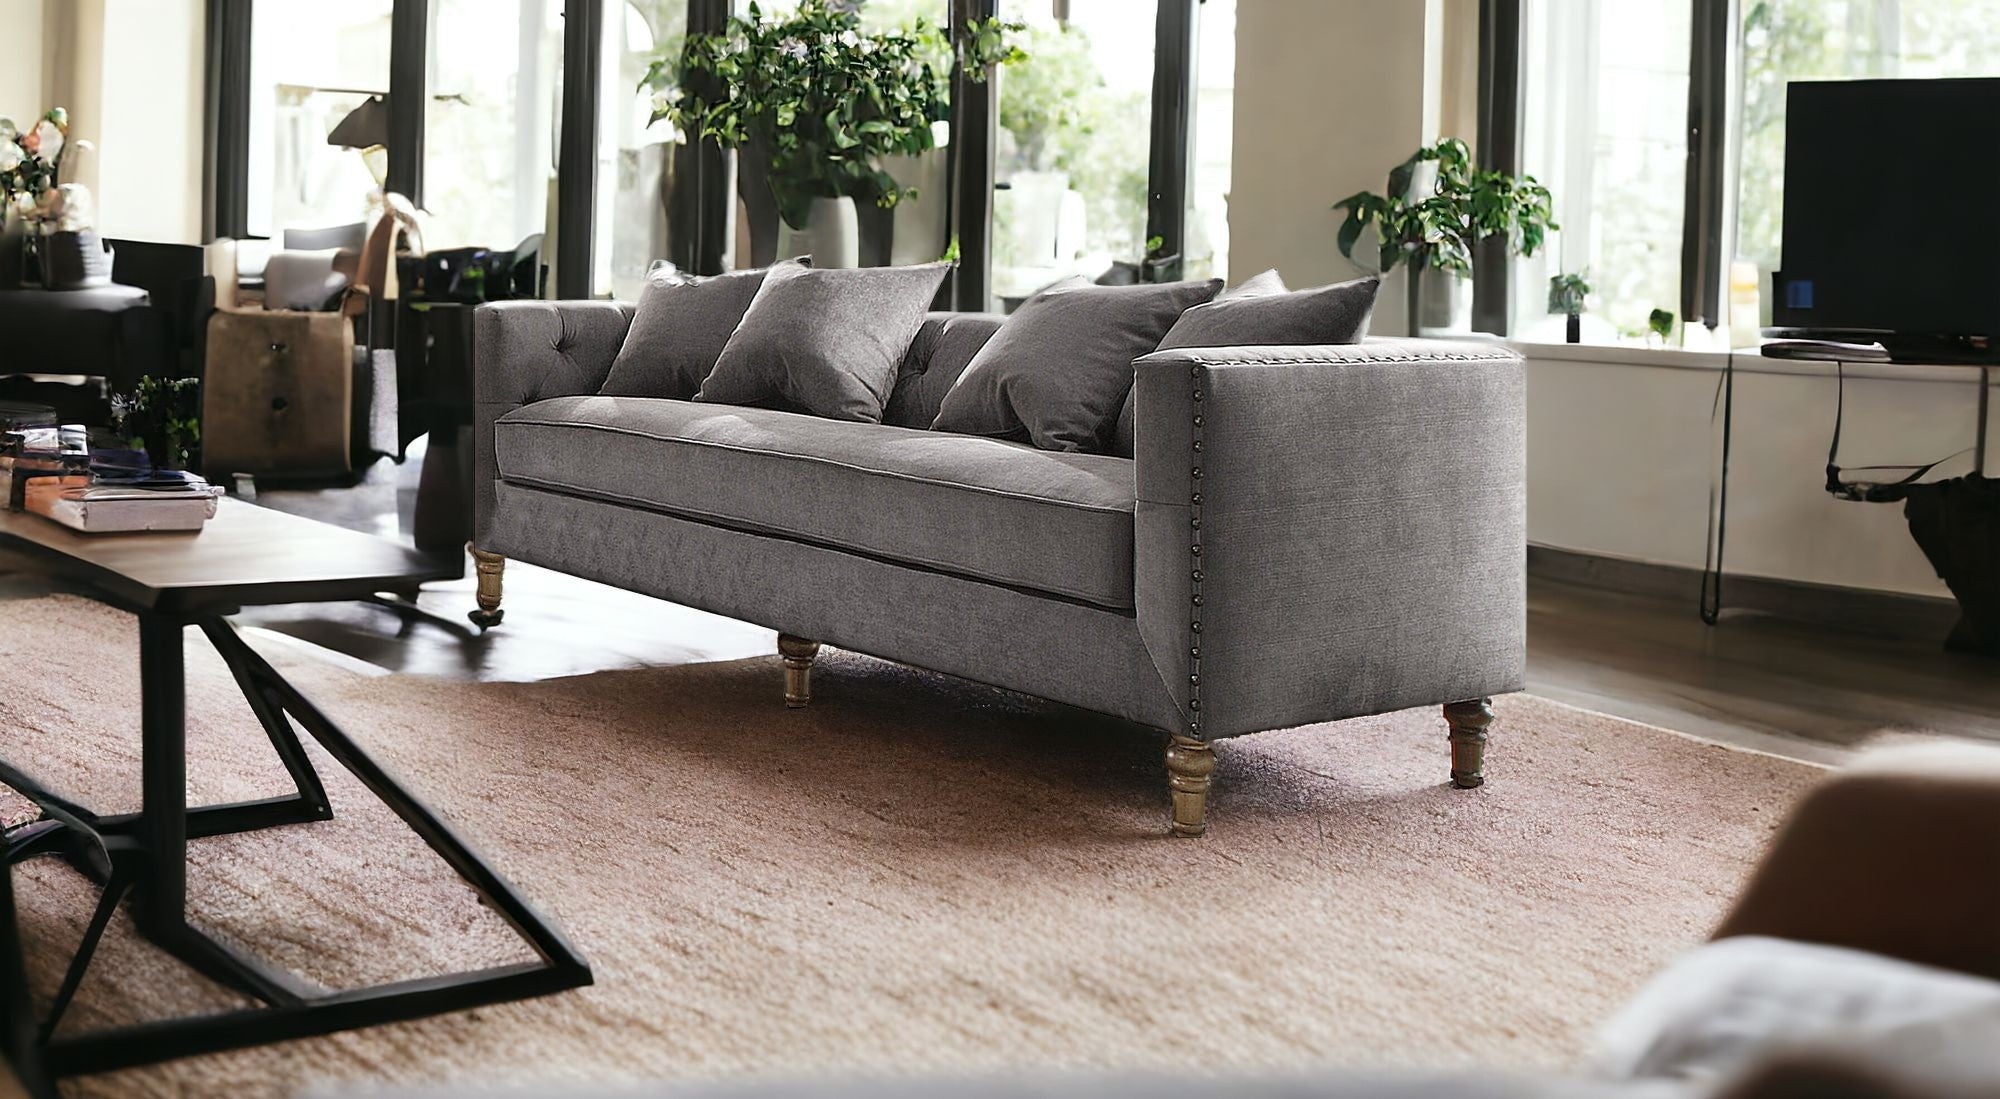 34" X 84" X 31" Gray Velvet Upholstery Sofa w4 Pillows